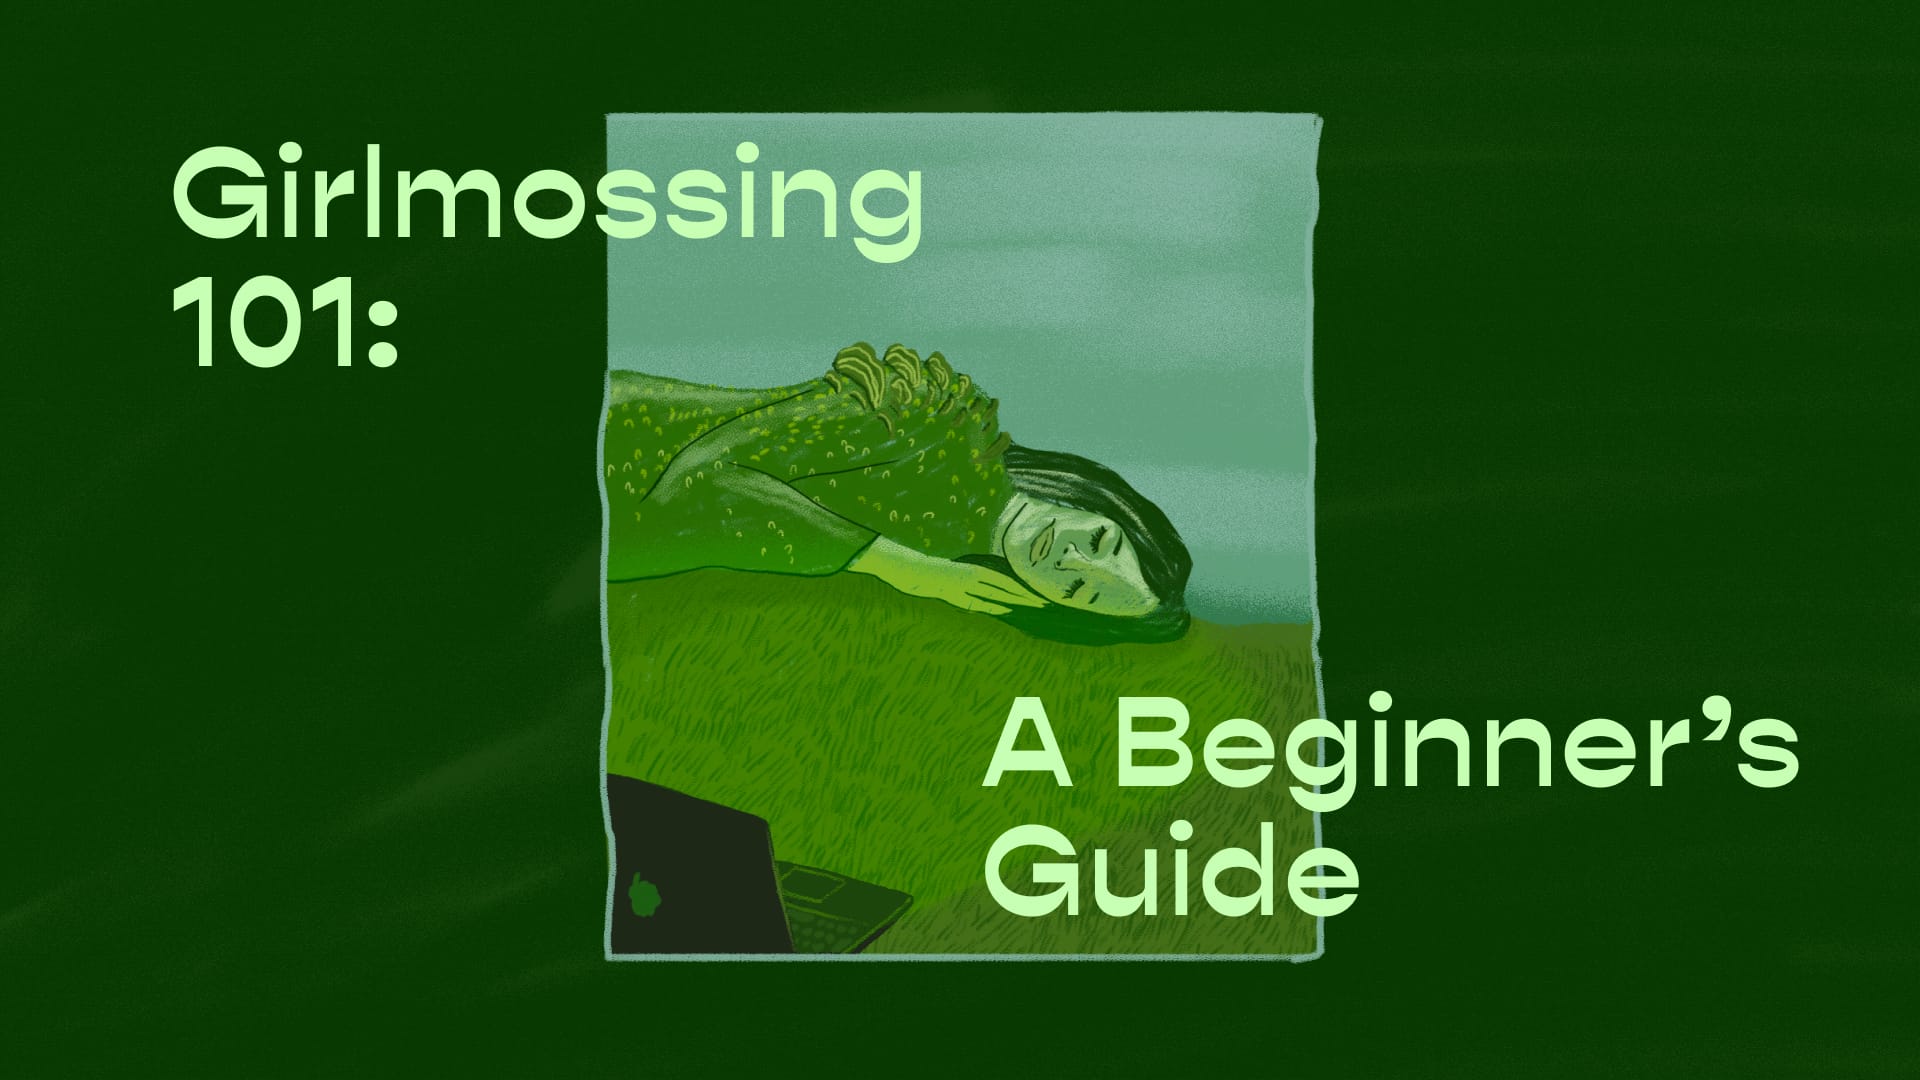 Girlmossing 101: A Beginner’s Guide